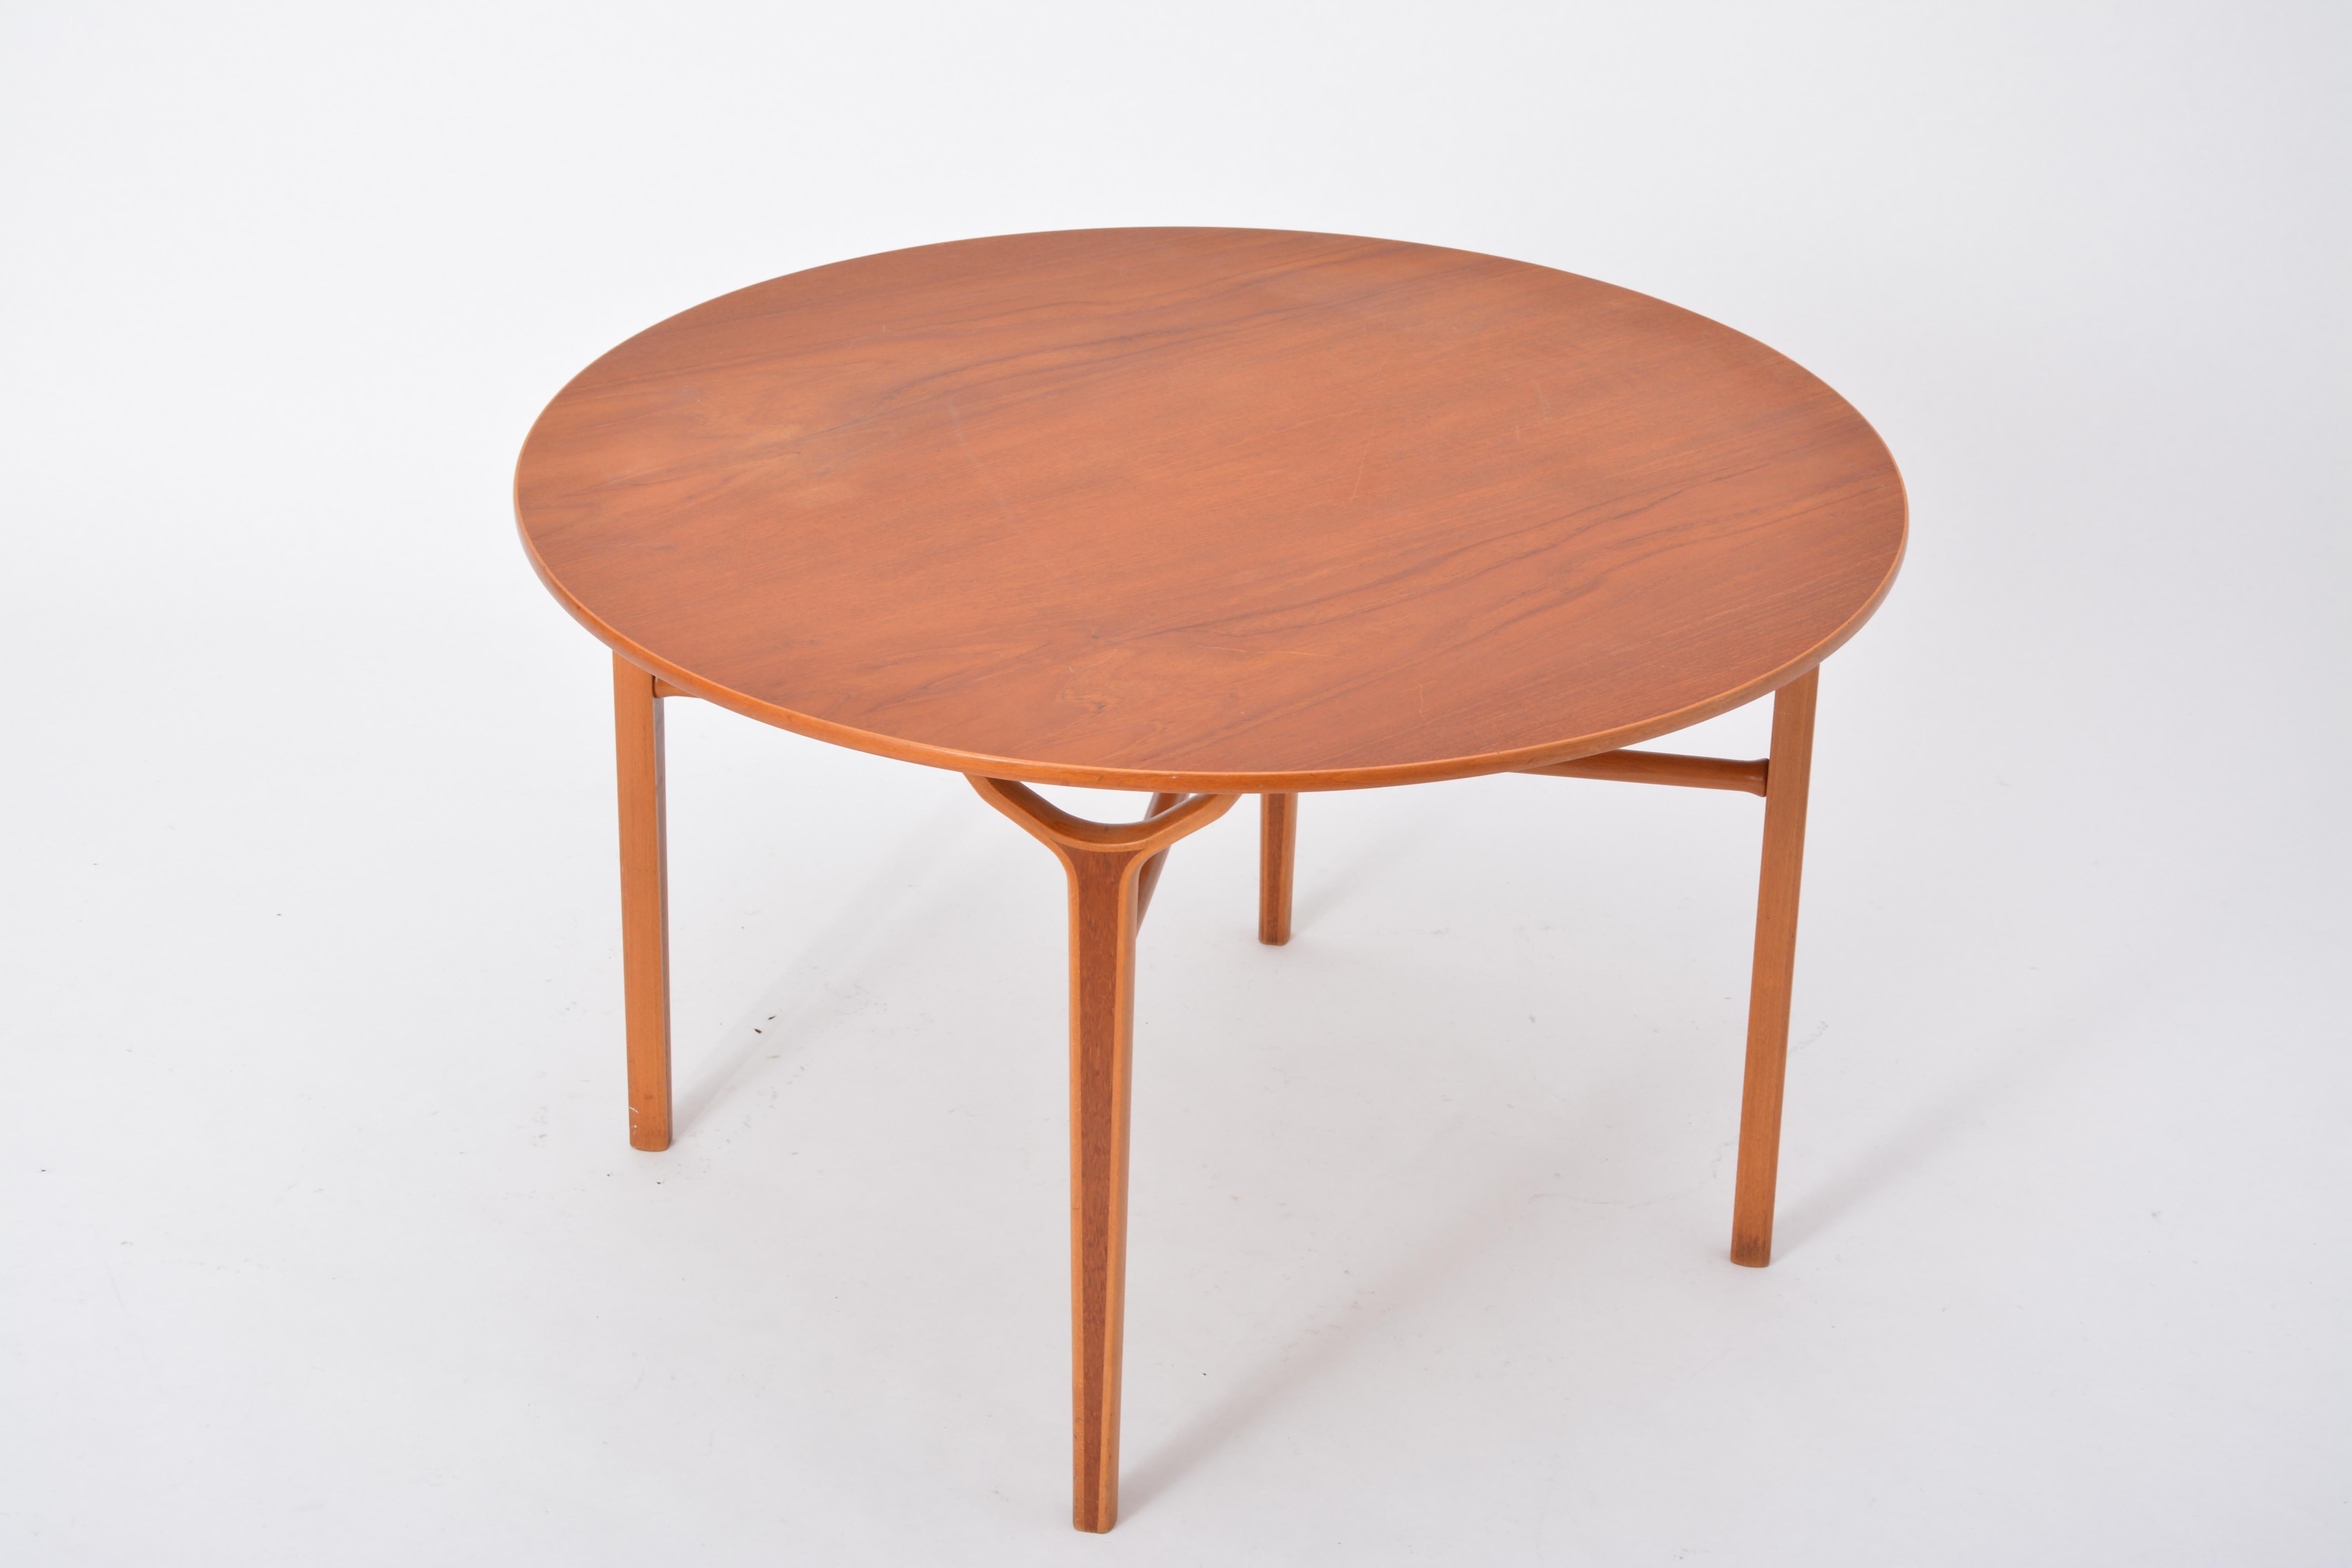 Table Ax danoise moderne du milieu du siècle, de Peter Hvidt et Orla Mølgaard-Nielsen

Cette table basse a été conçue dans les années 1950 par Peter Hvidt et Orla Molgaard Nielsen. Il fait partie de la célèbre série Ax, connue pour ses meubles aux